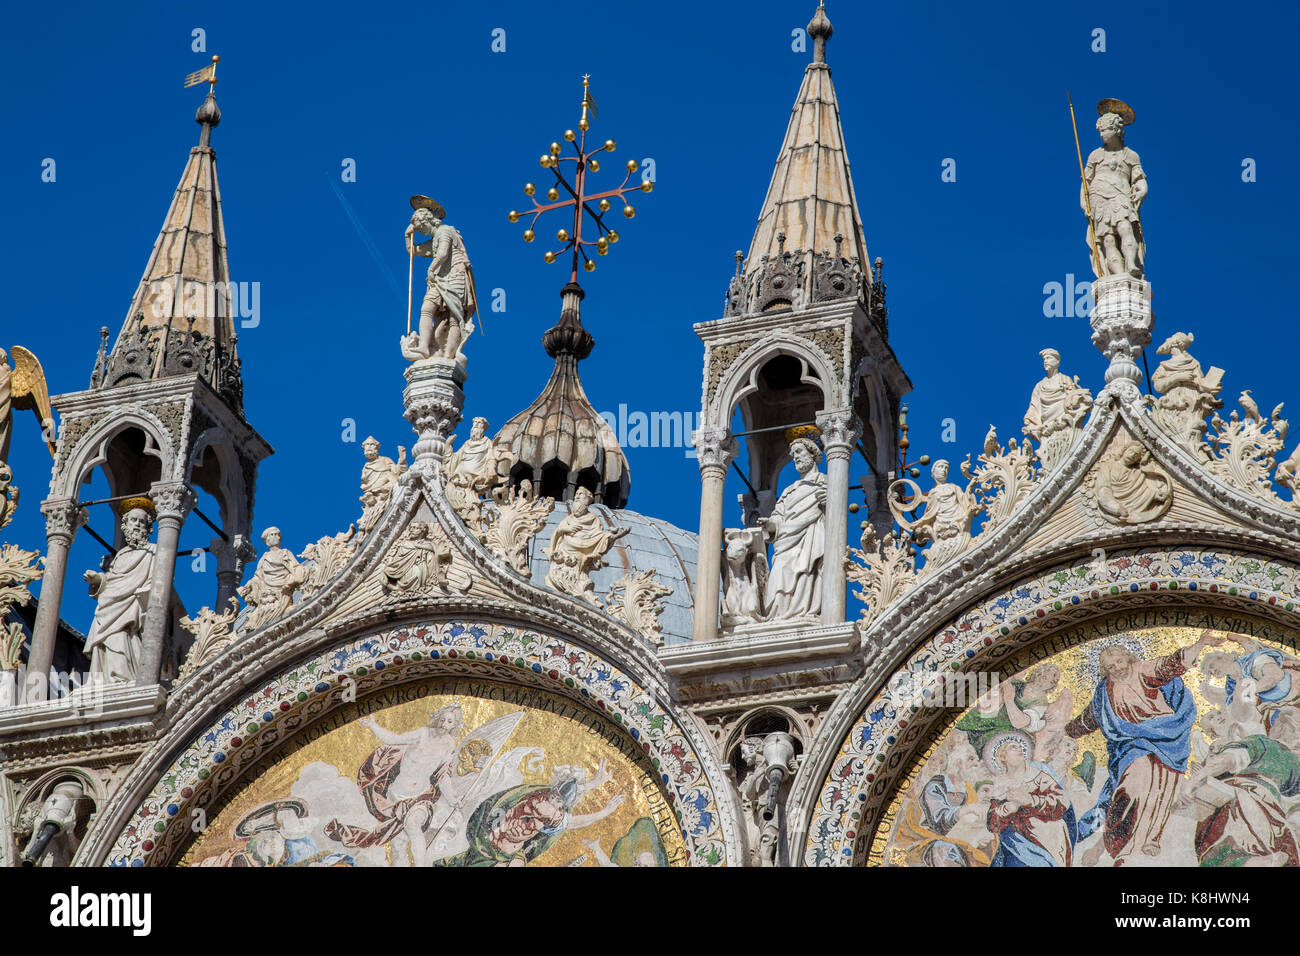 Die komplizierten und aufwendigen Dekoration auf der Spitze der Basilika St. Marco in der Markusplatz, Venedig, Italien Stockfoto